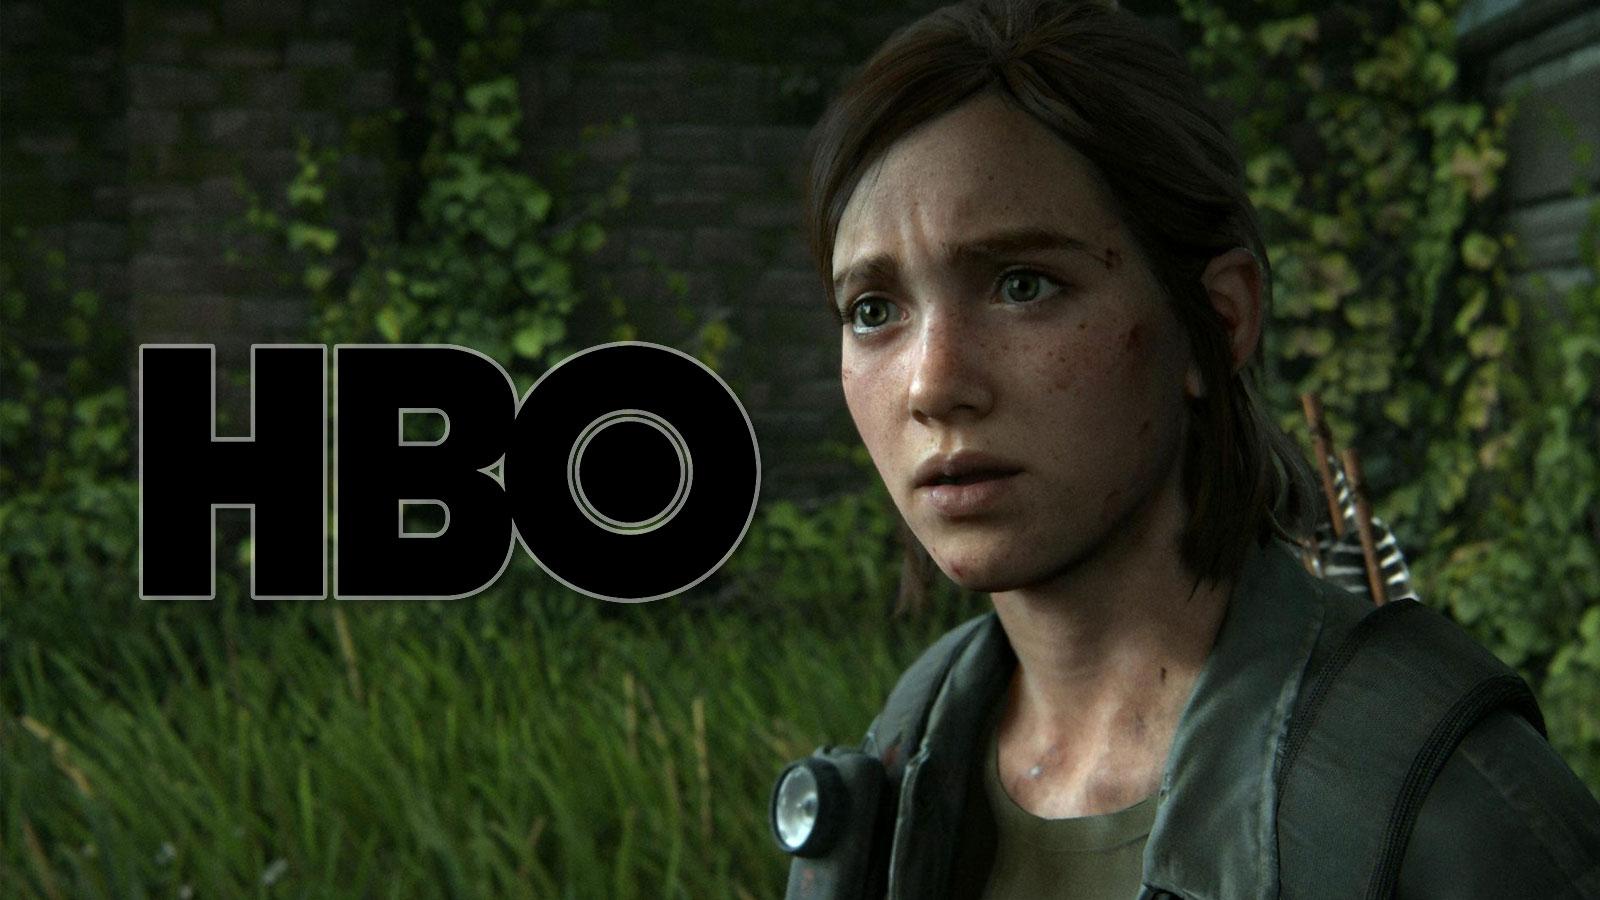 Ellie gasps at the HBO logo